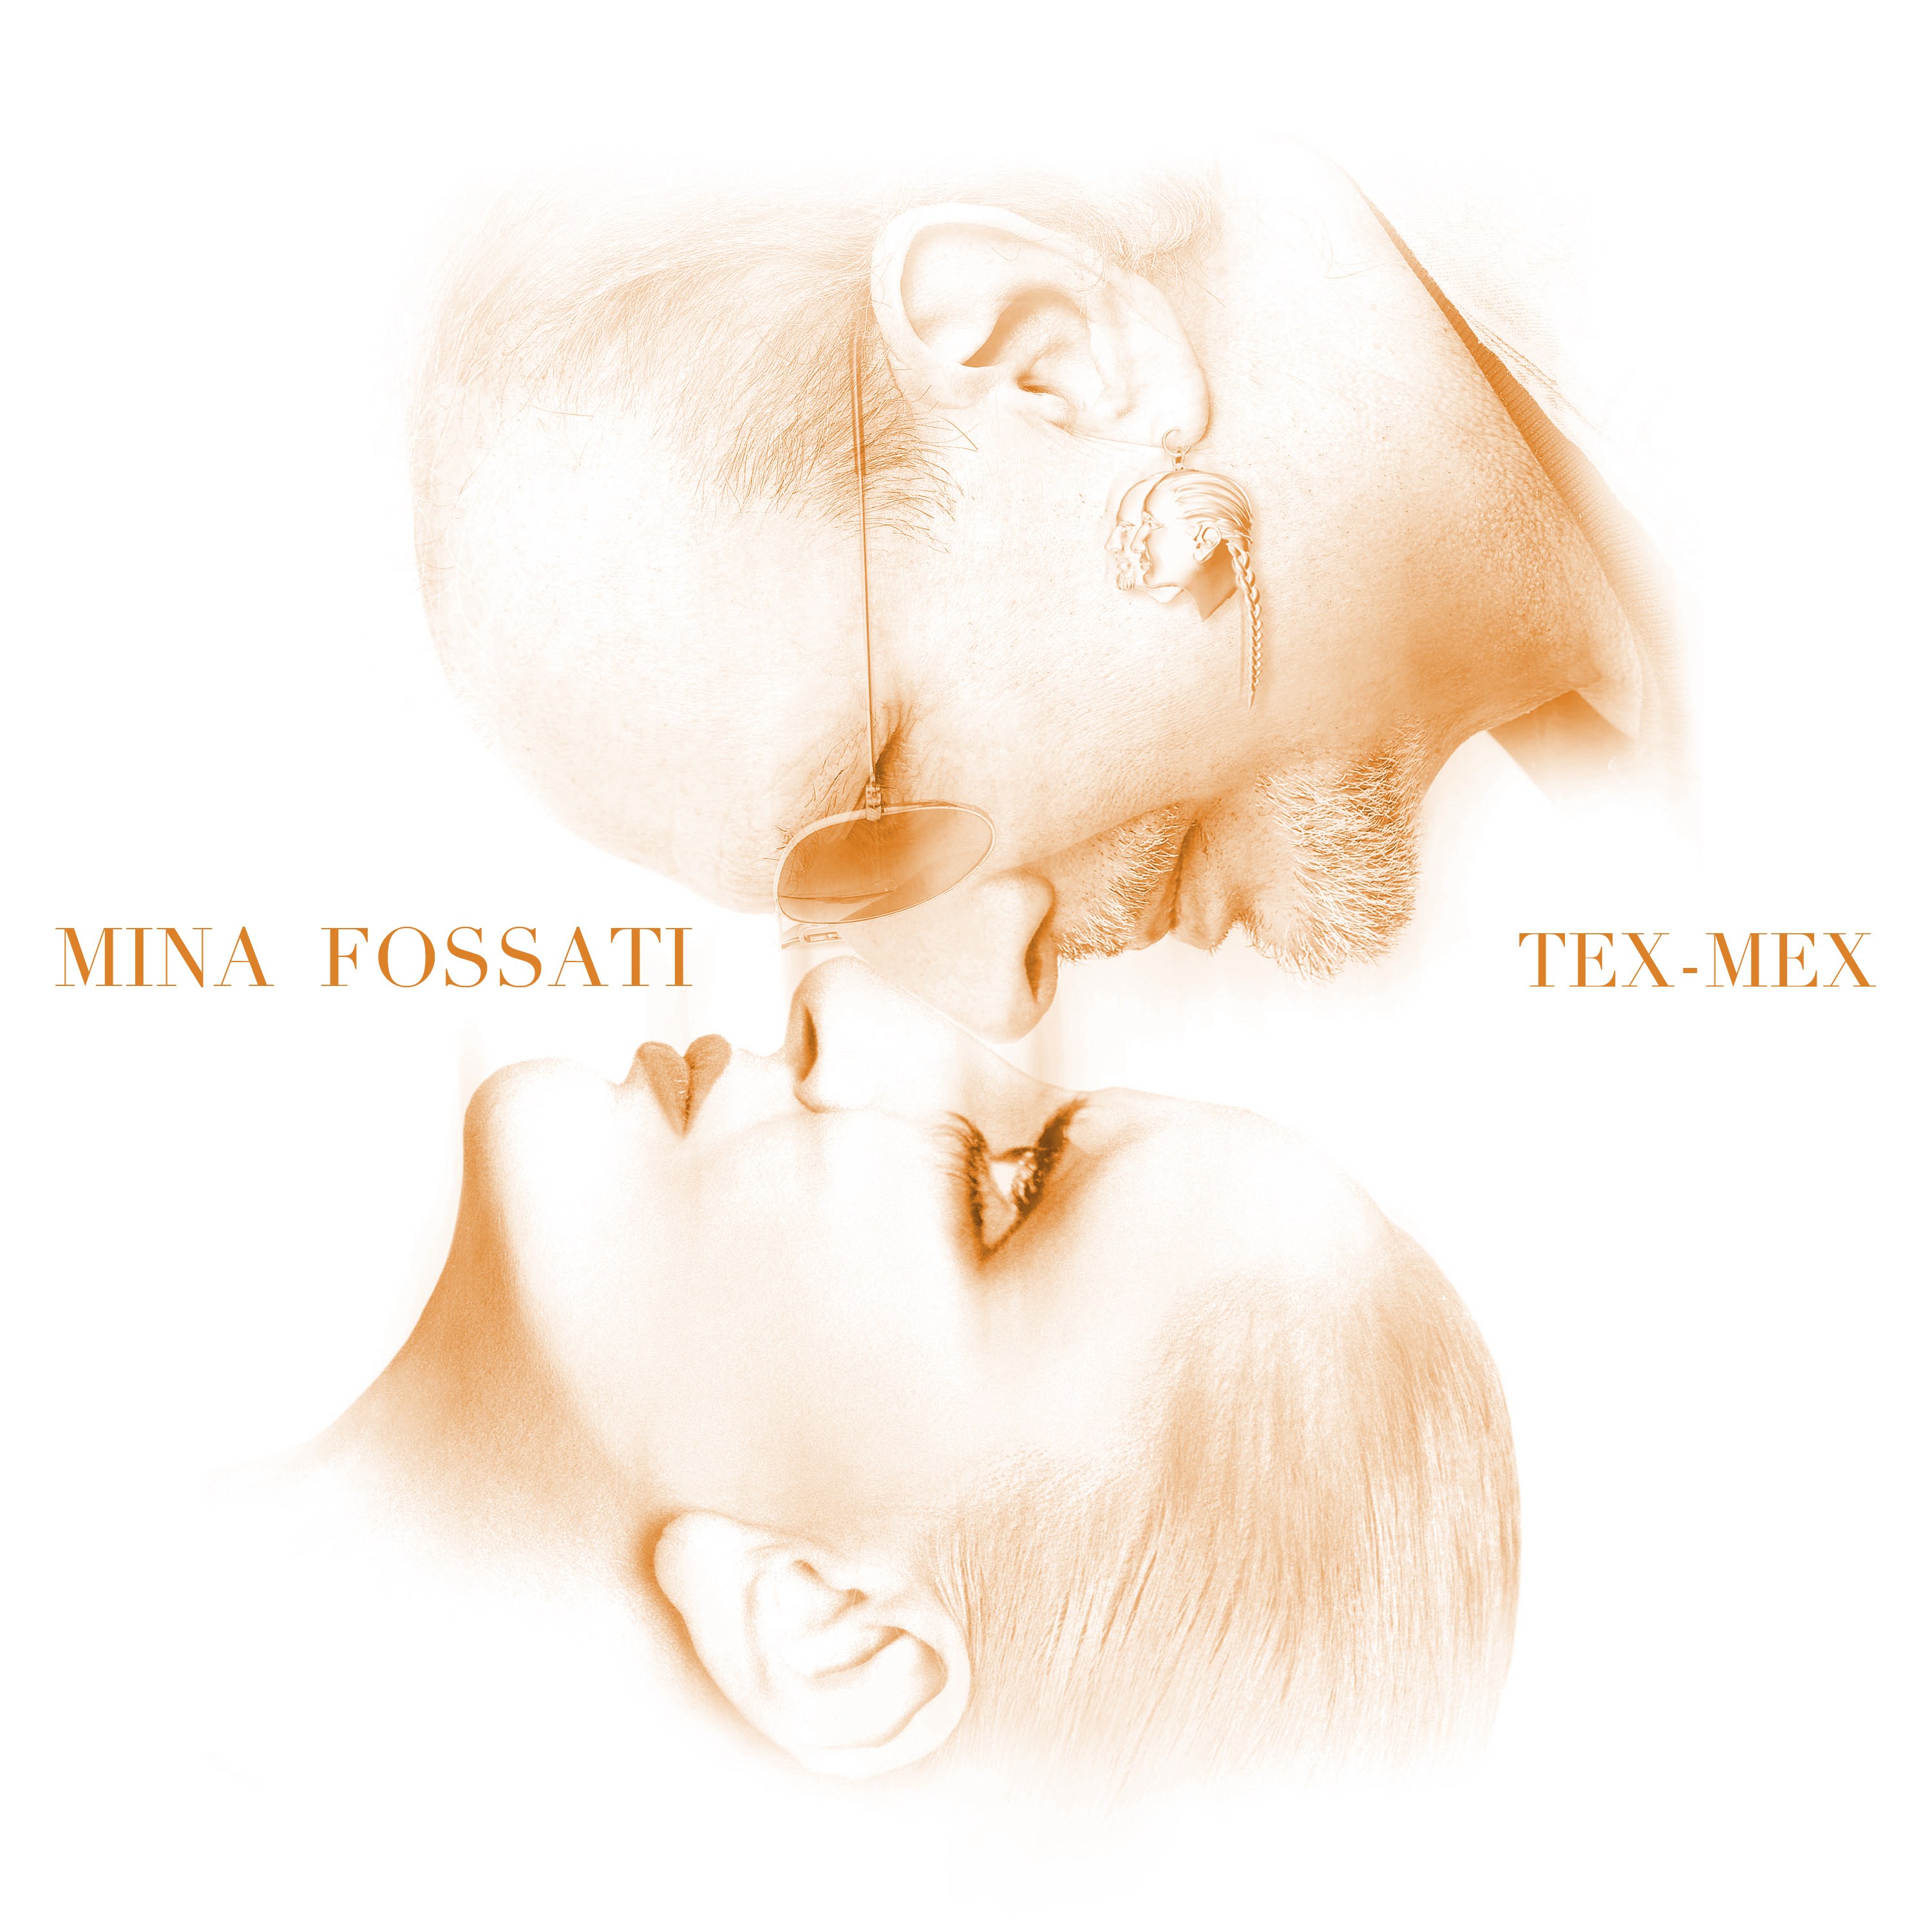 MINA FOSSATI: esce oggi 7 novembre il singolo TEX-MEX